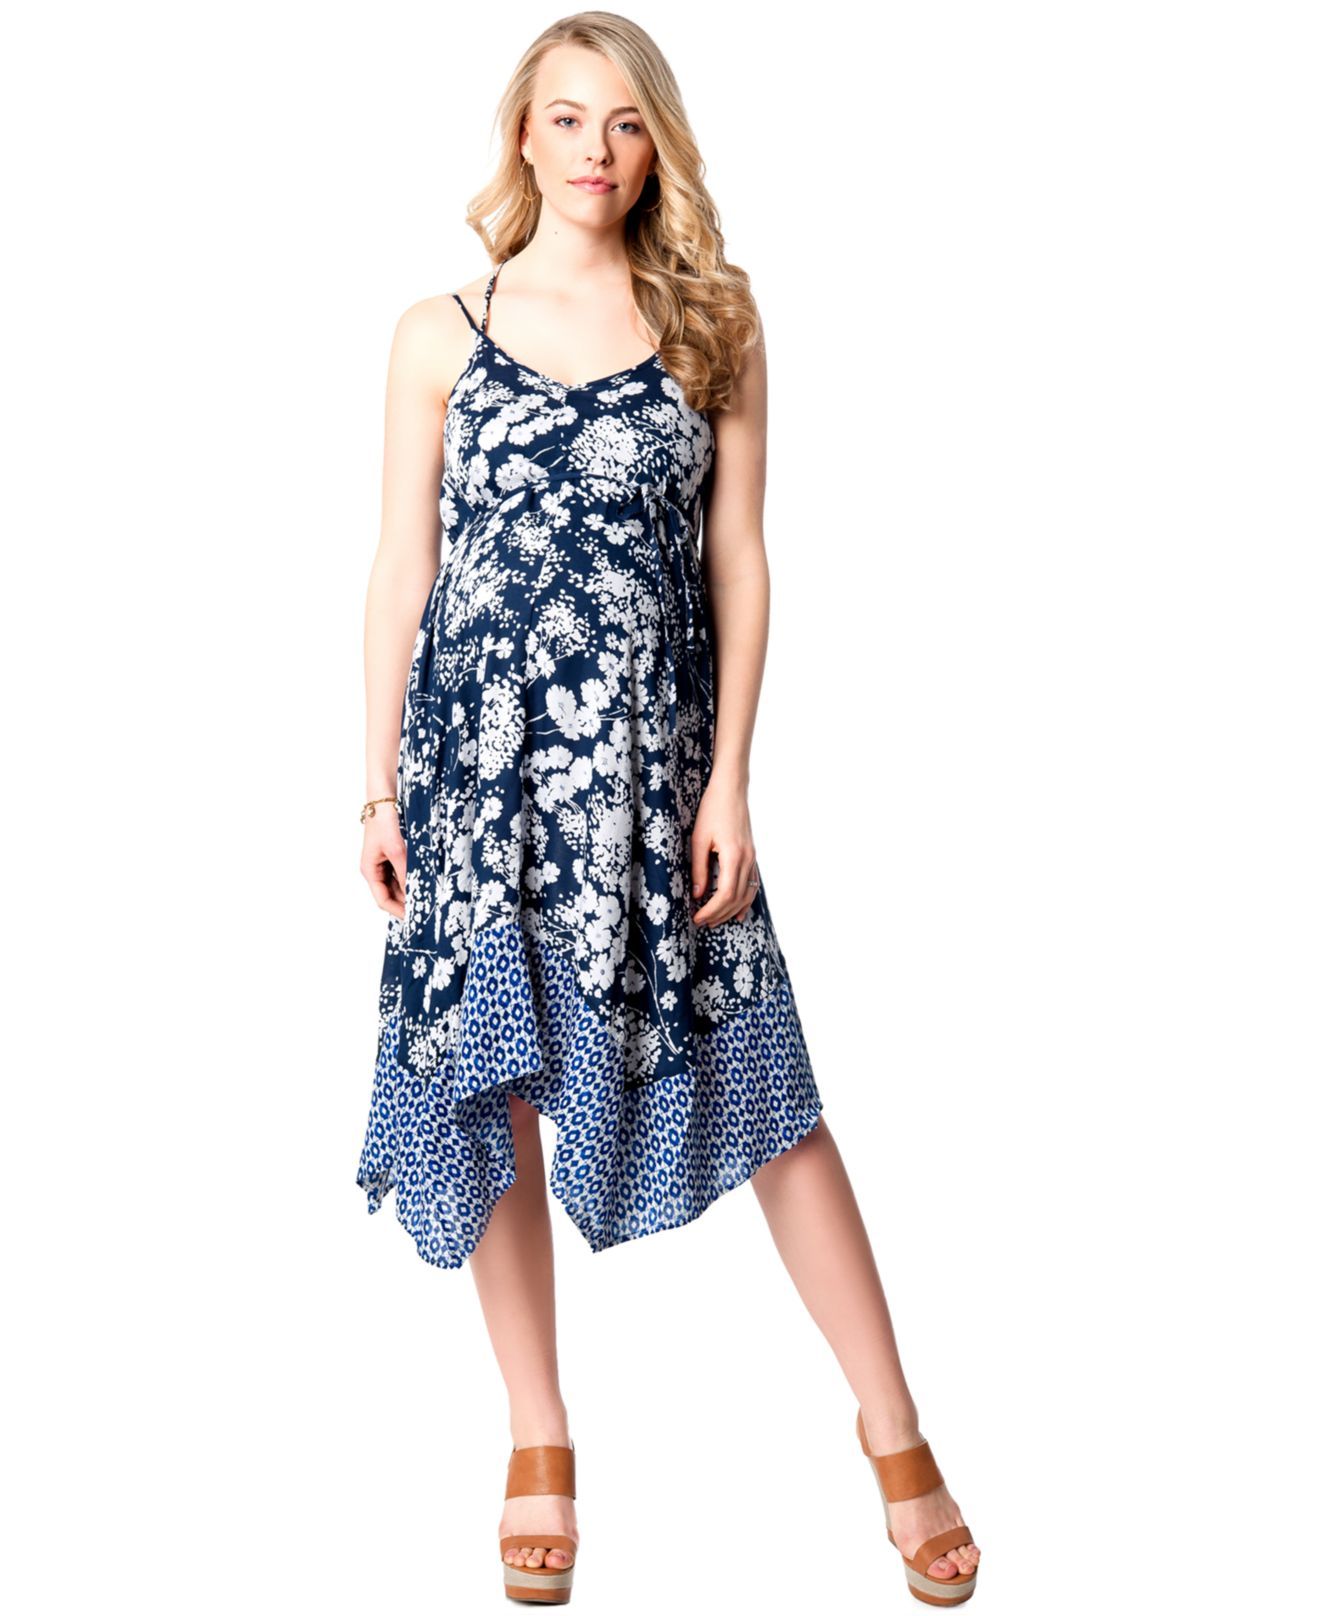 Jessica Simpson Maternity Handkerchief-hem Print Dress in Floral (Blue) - Lyst1320 x 1616